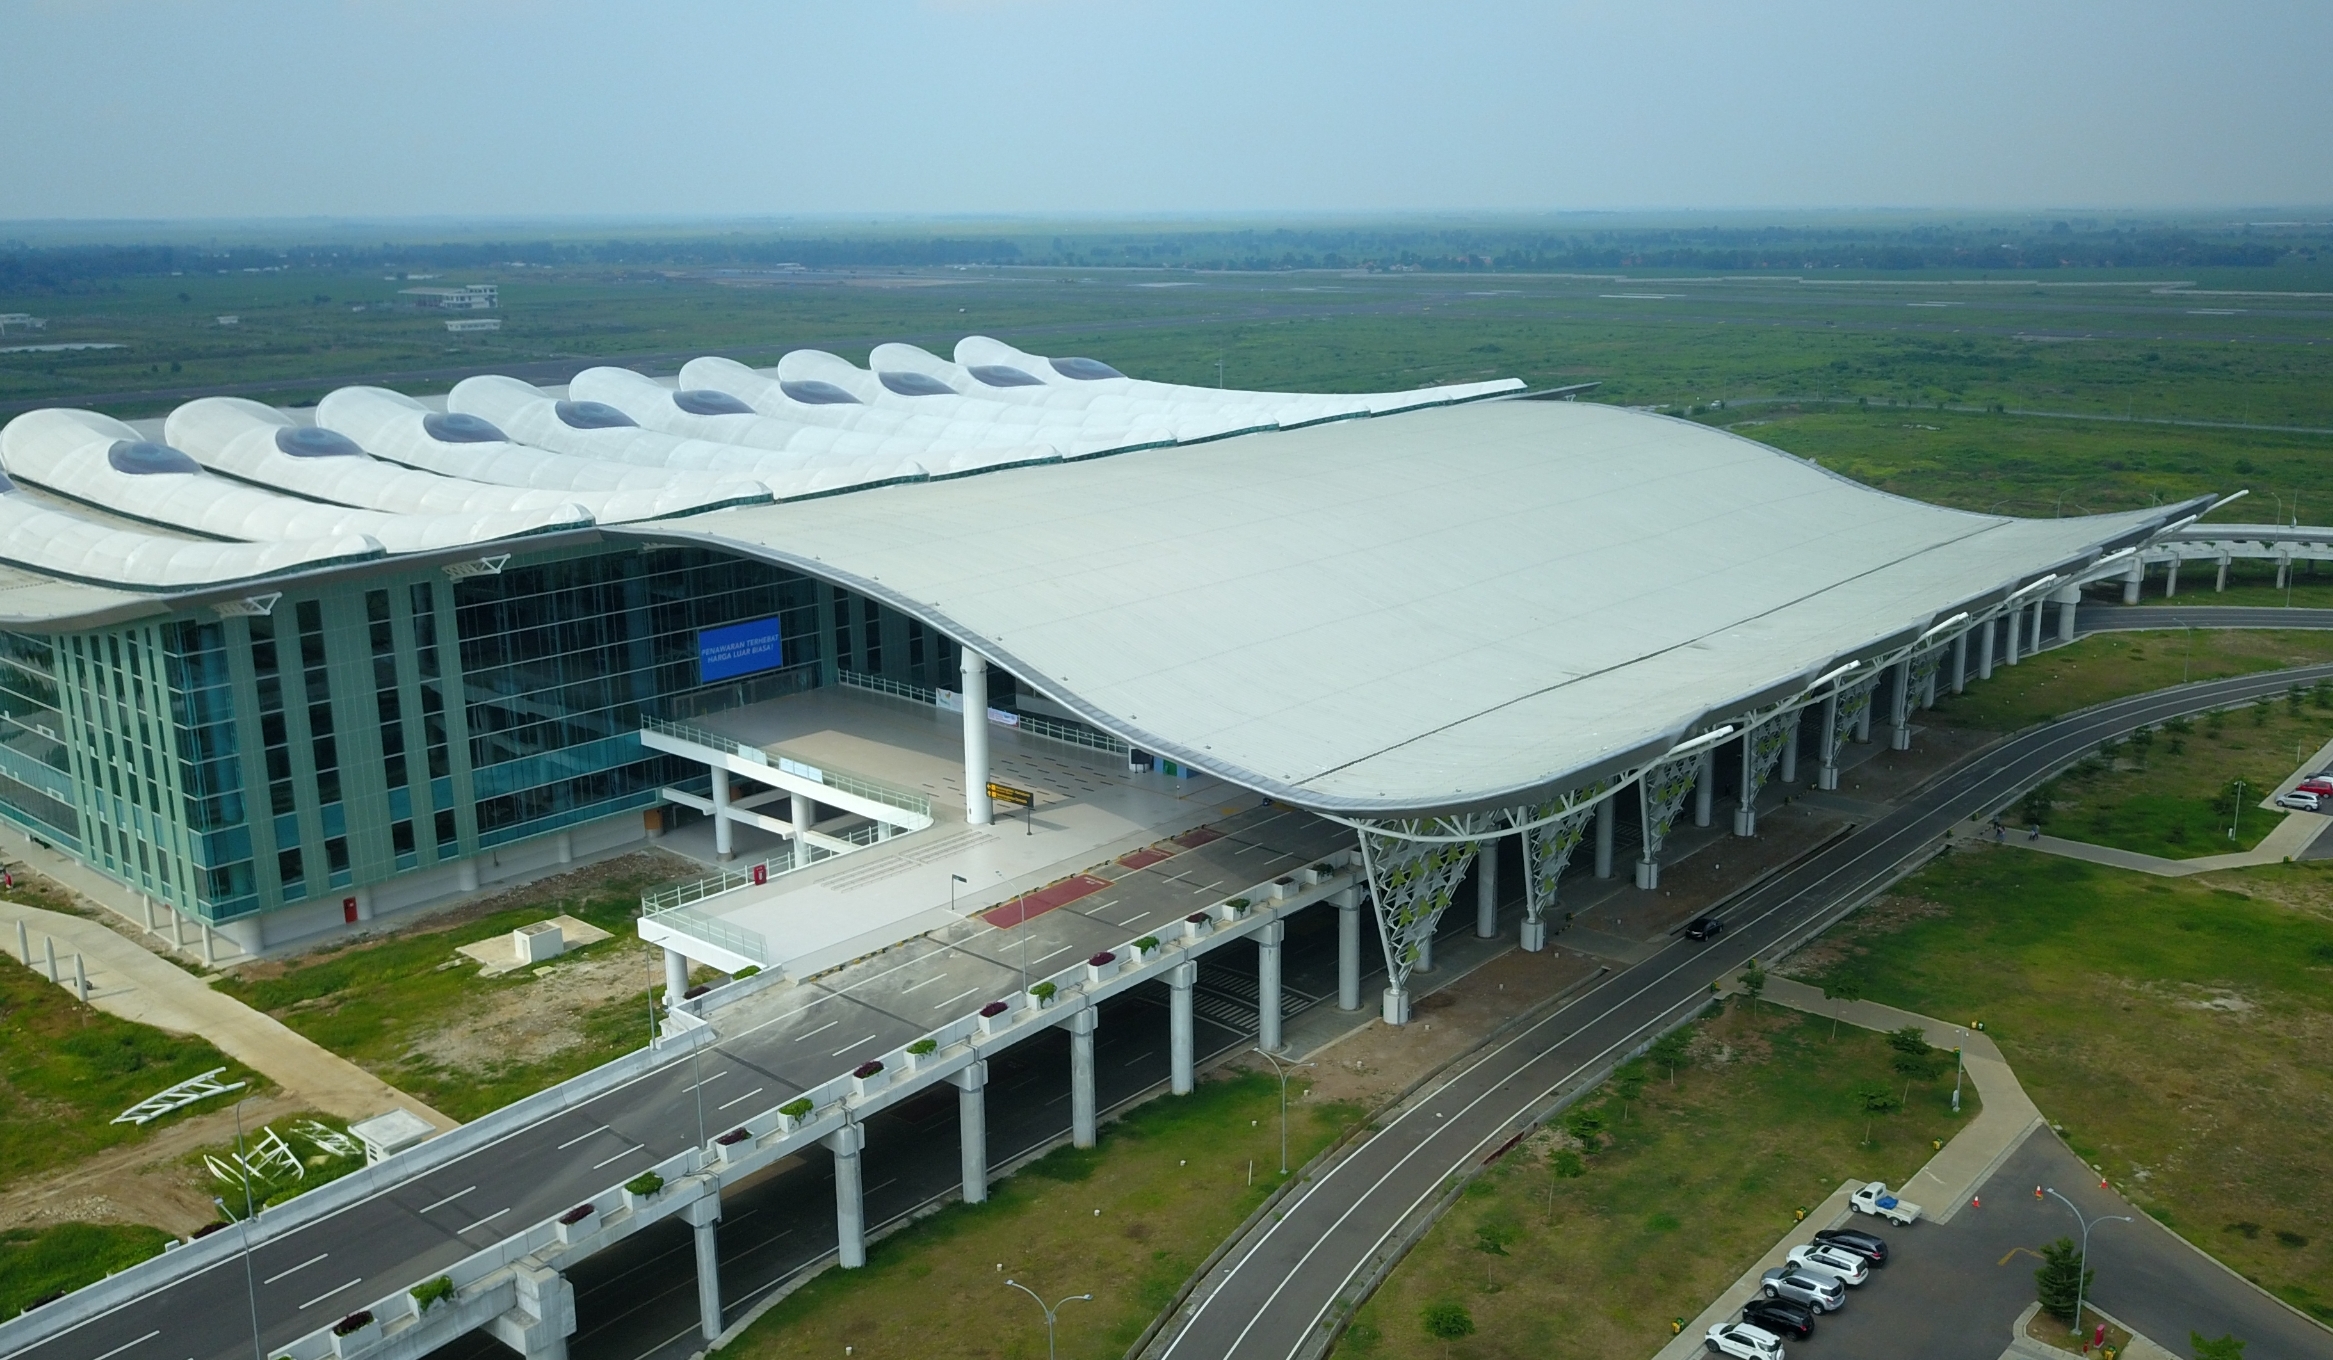 AKHIRNYA! Mei 2023 Bandara Kertajati Majalengka Ramai Lagi, Maskapai Ini Siap Kembali